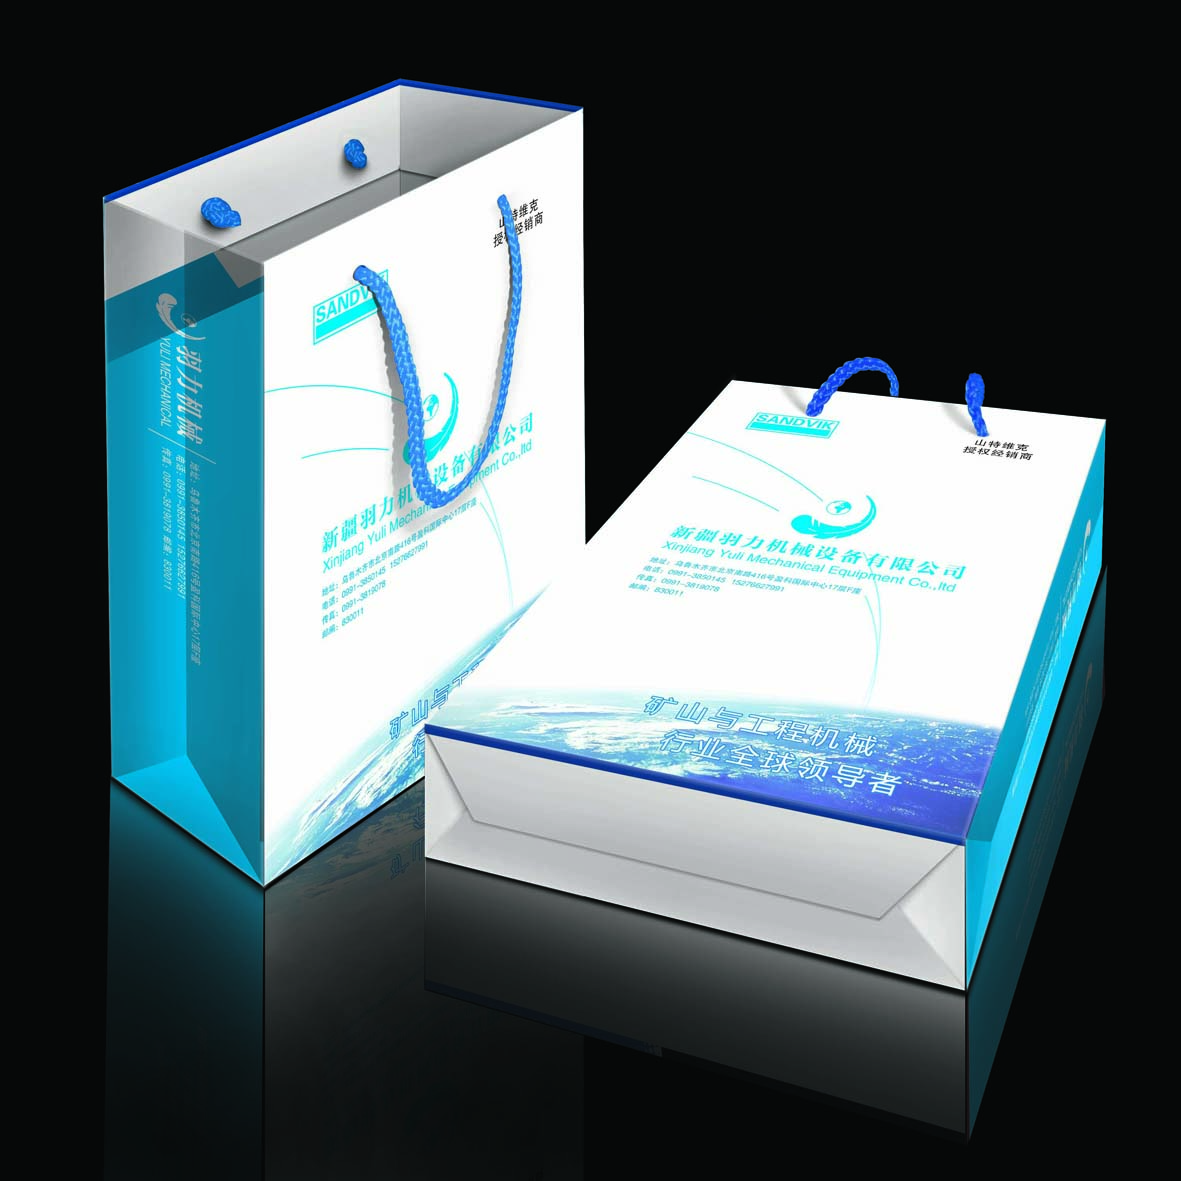 新疆包装设计印刷  新疆画册设计印刷  新疆设计印刷  新疆印刷设计  新疆广告设计 新疆广告制作